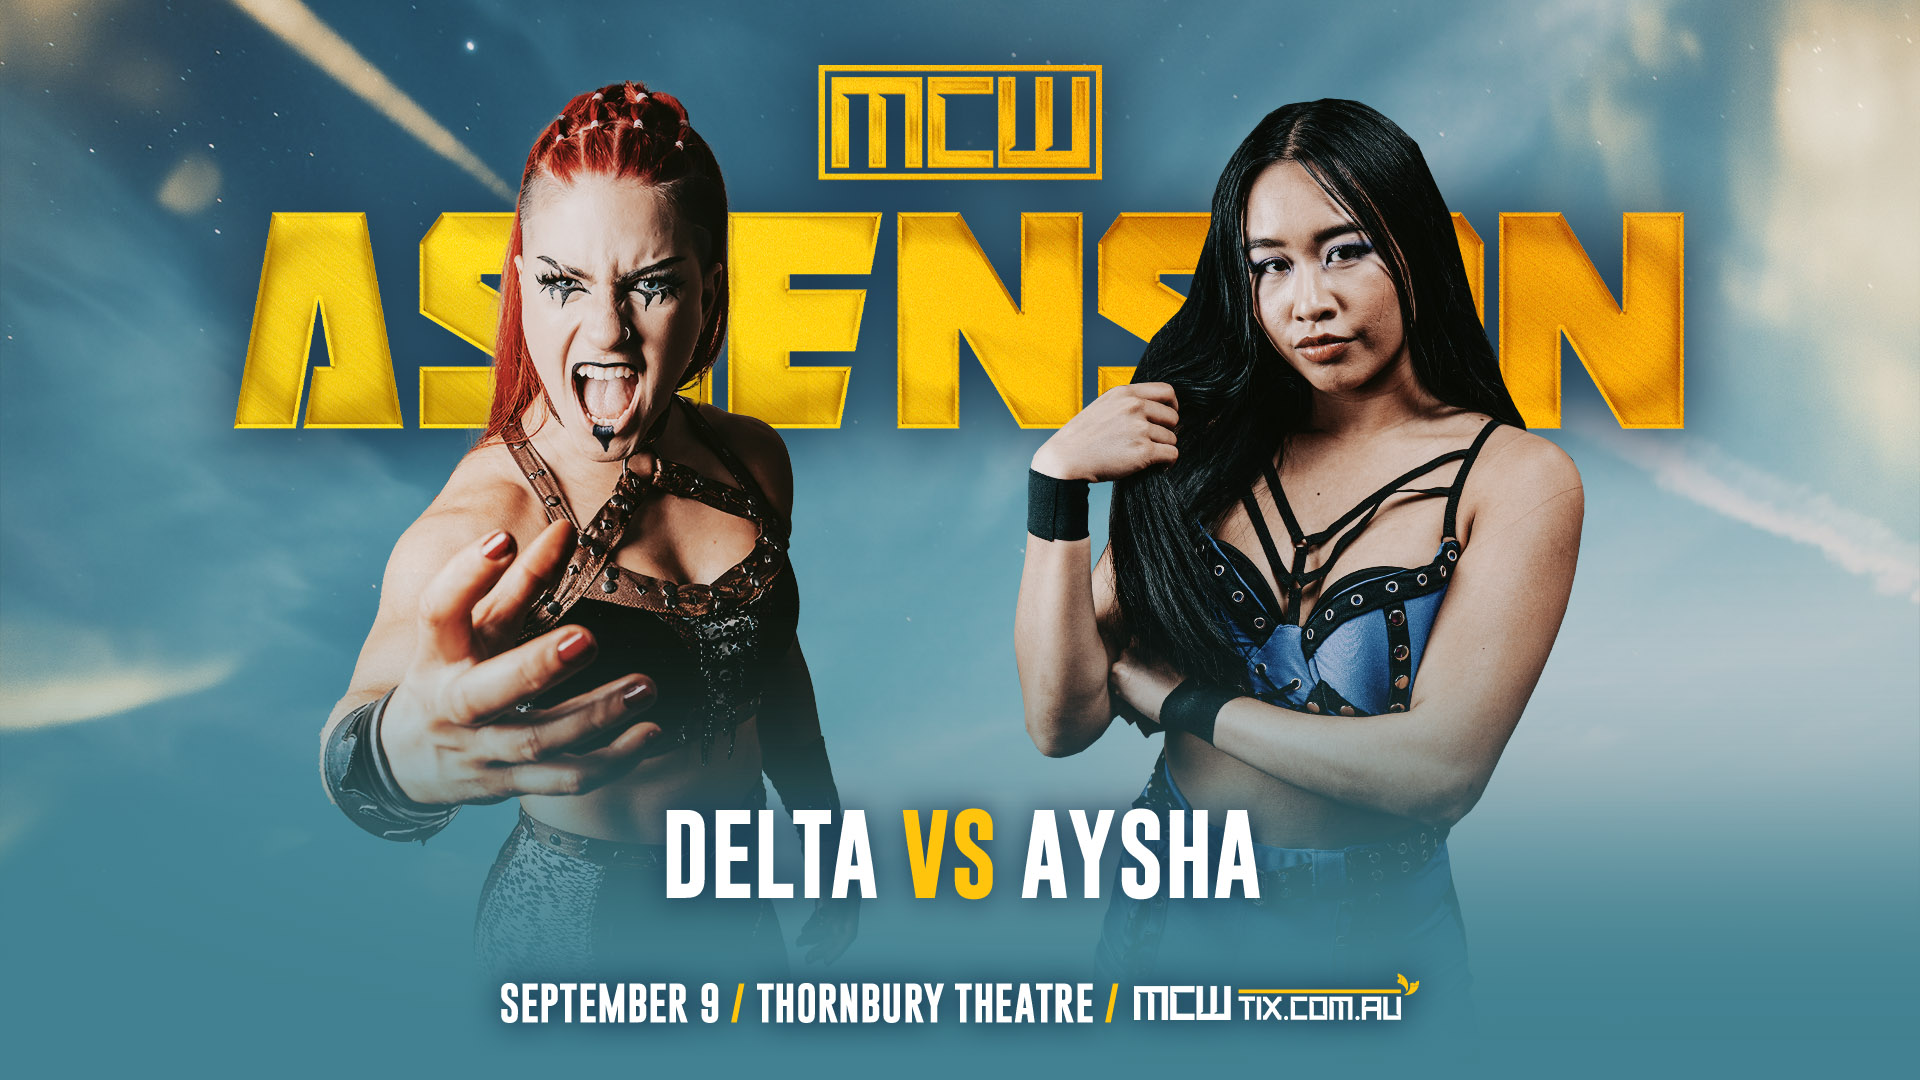 Ascension – Delta vs. Aysha